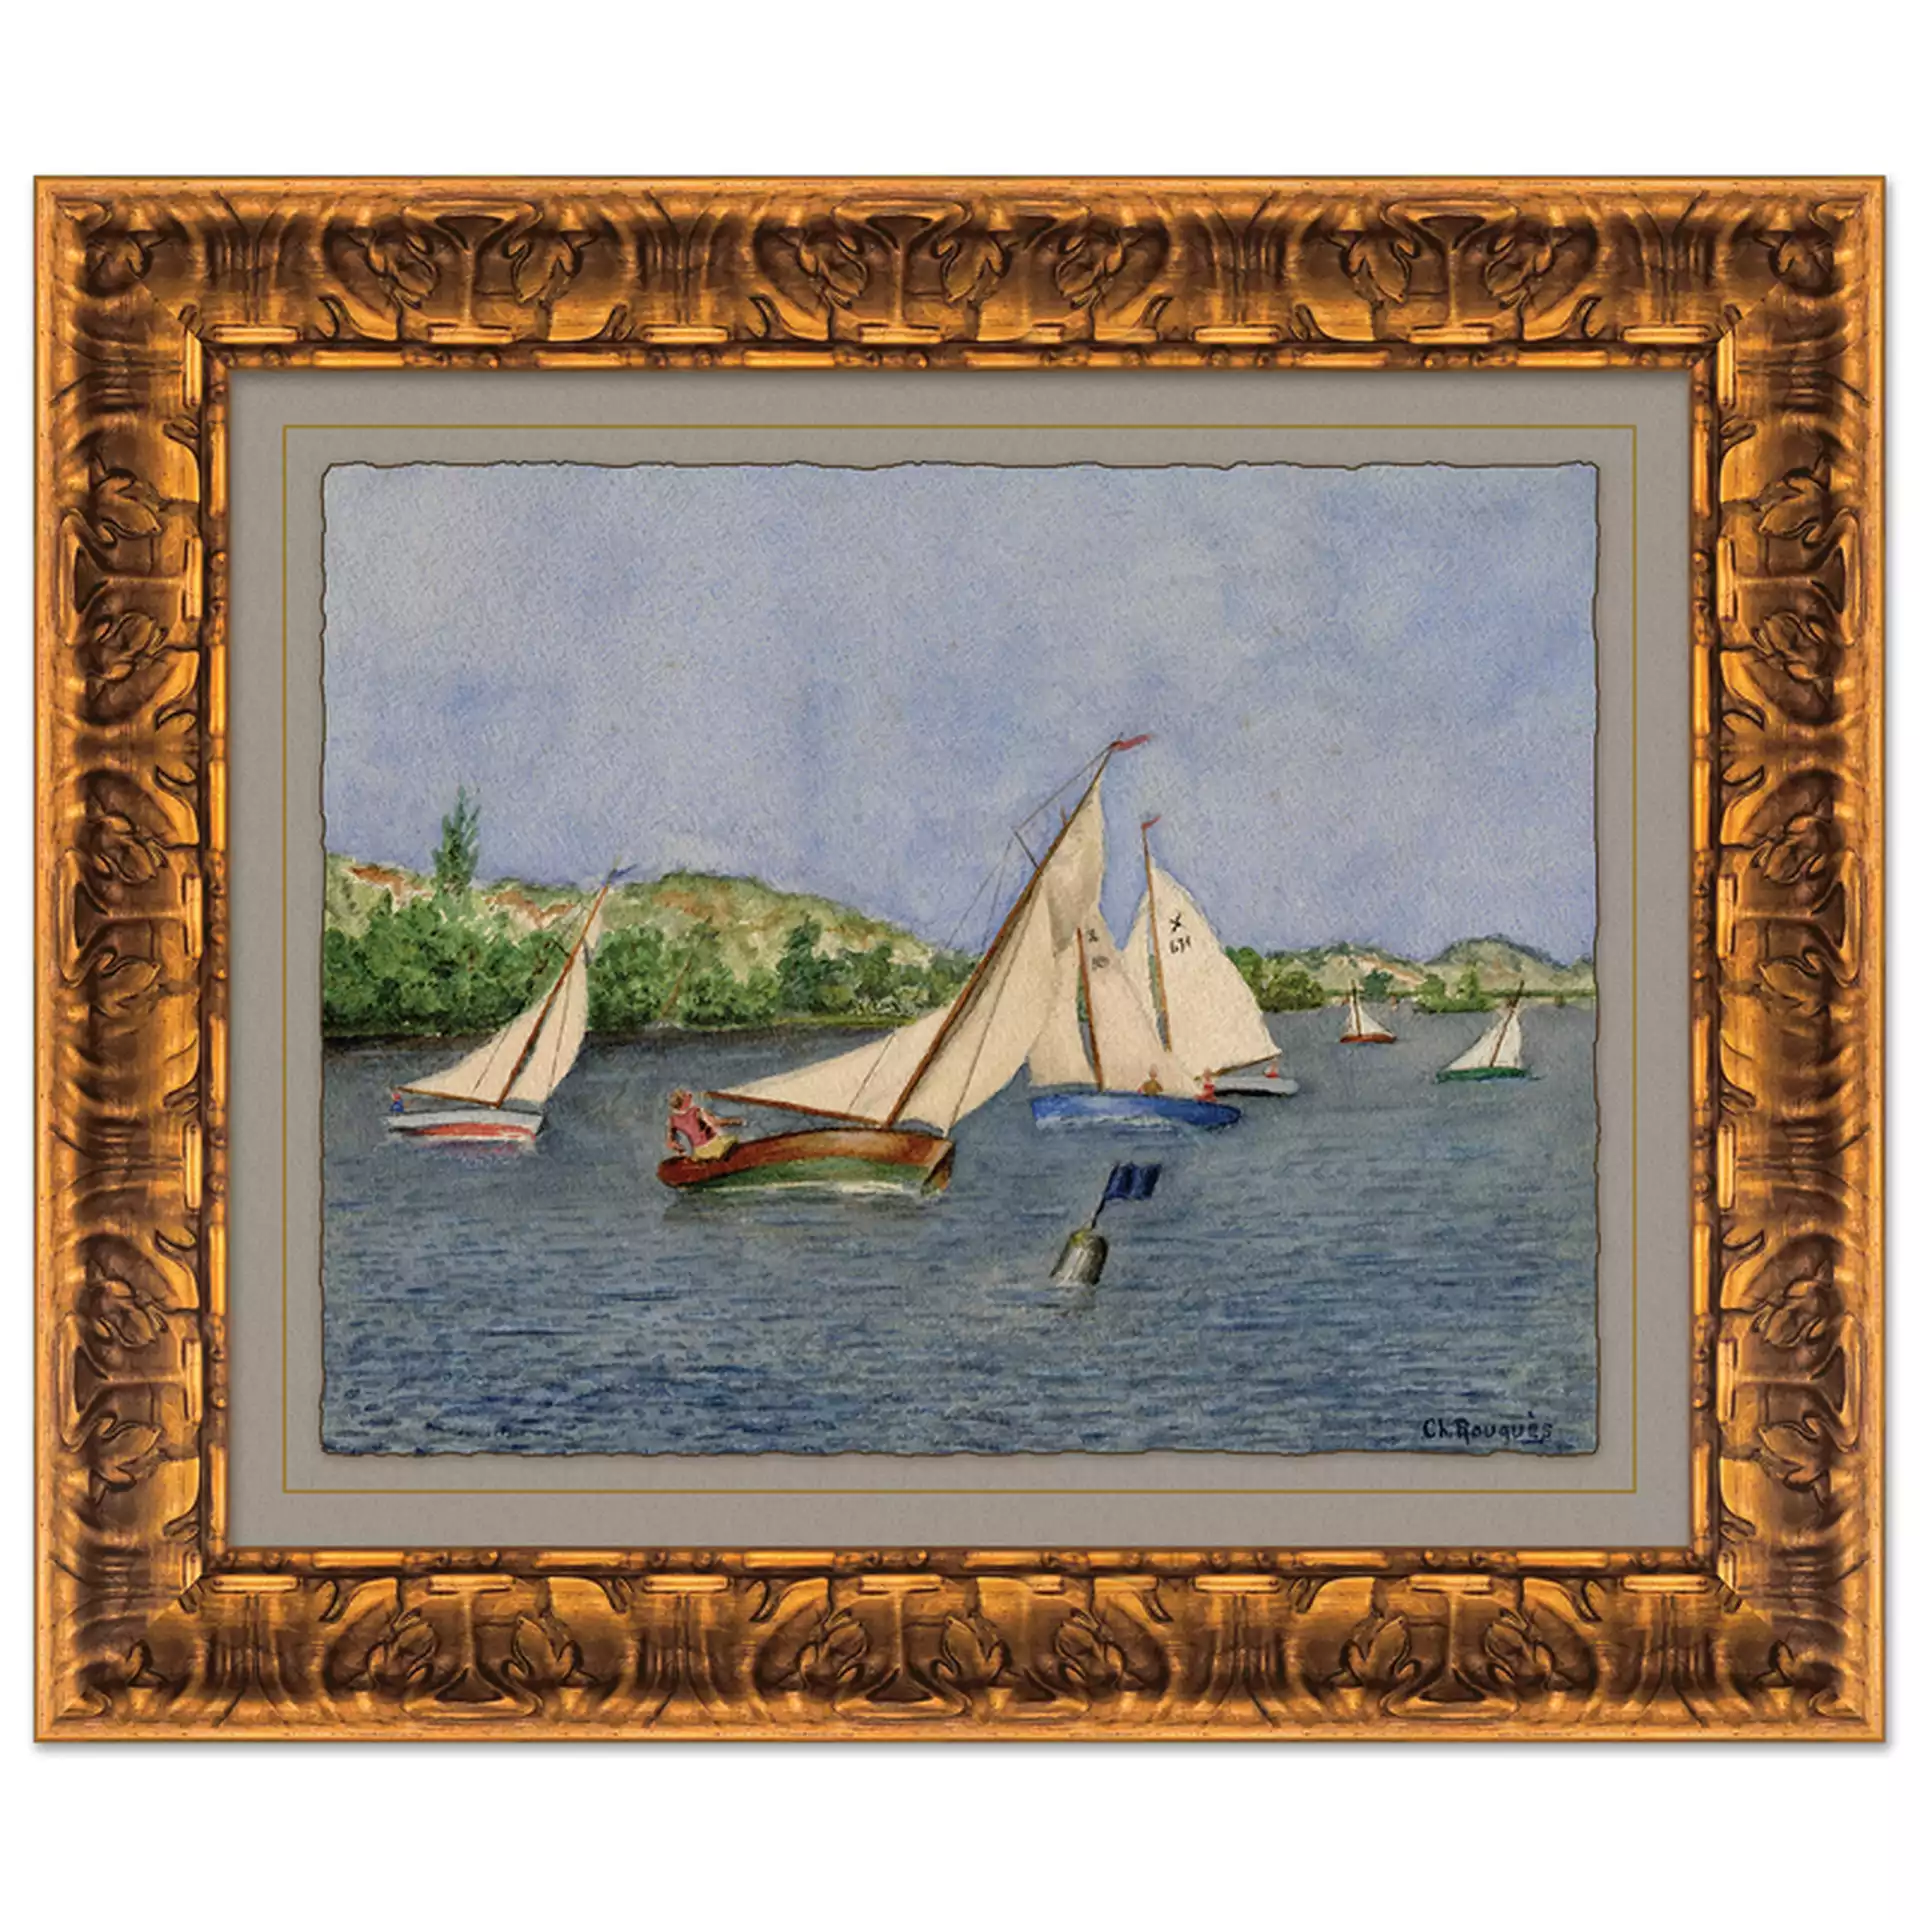 Boat Race In Harbor Art Print, 26" x 22"